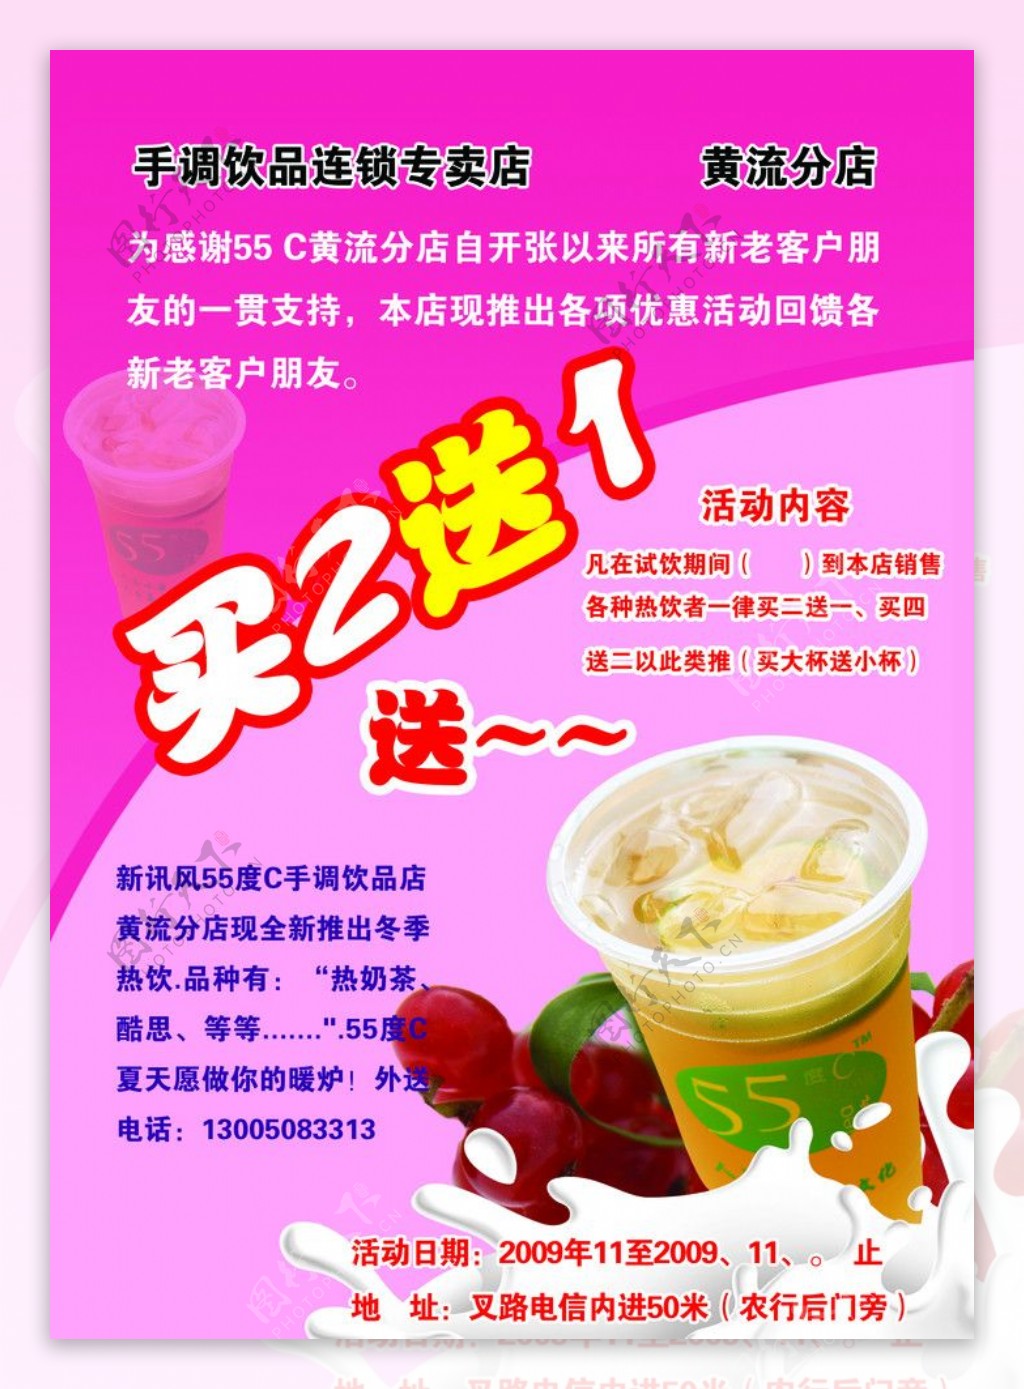 宣传单广告设计图奶茶水果图片